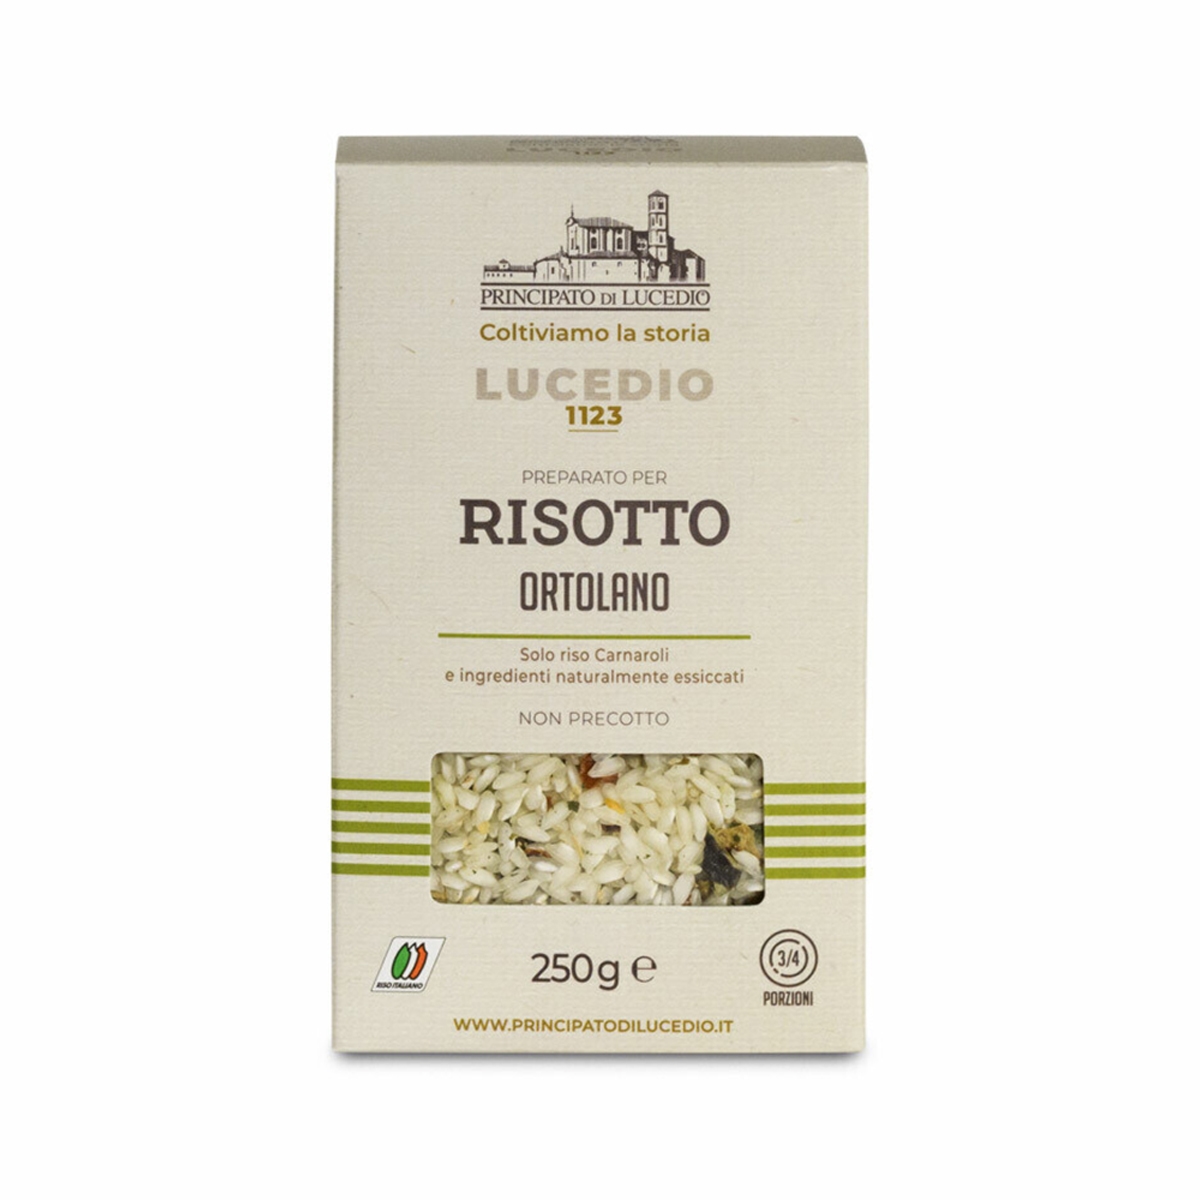 Risotto Ortolano - 250 g - Confezionato in Atmosfera Protettiva Principato  di Lucedio Risotti pronti